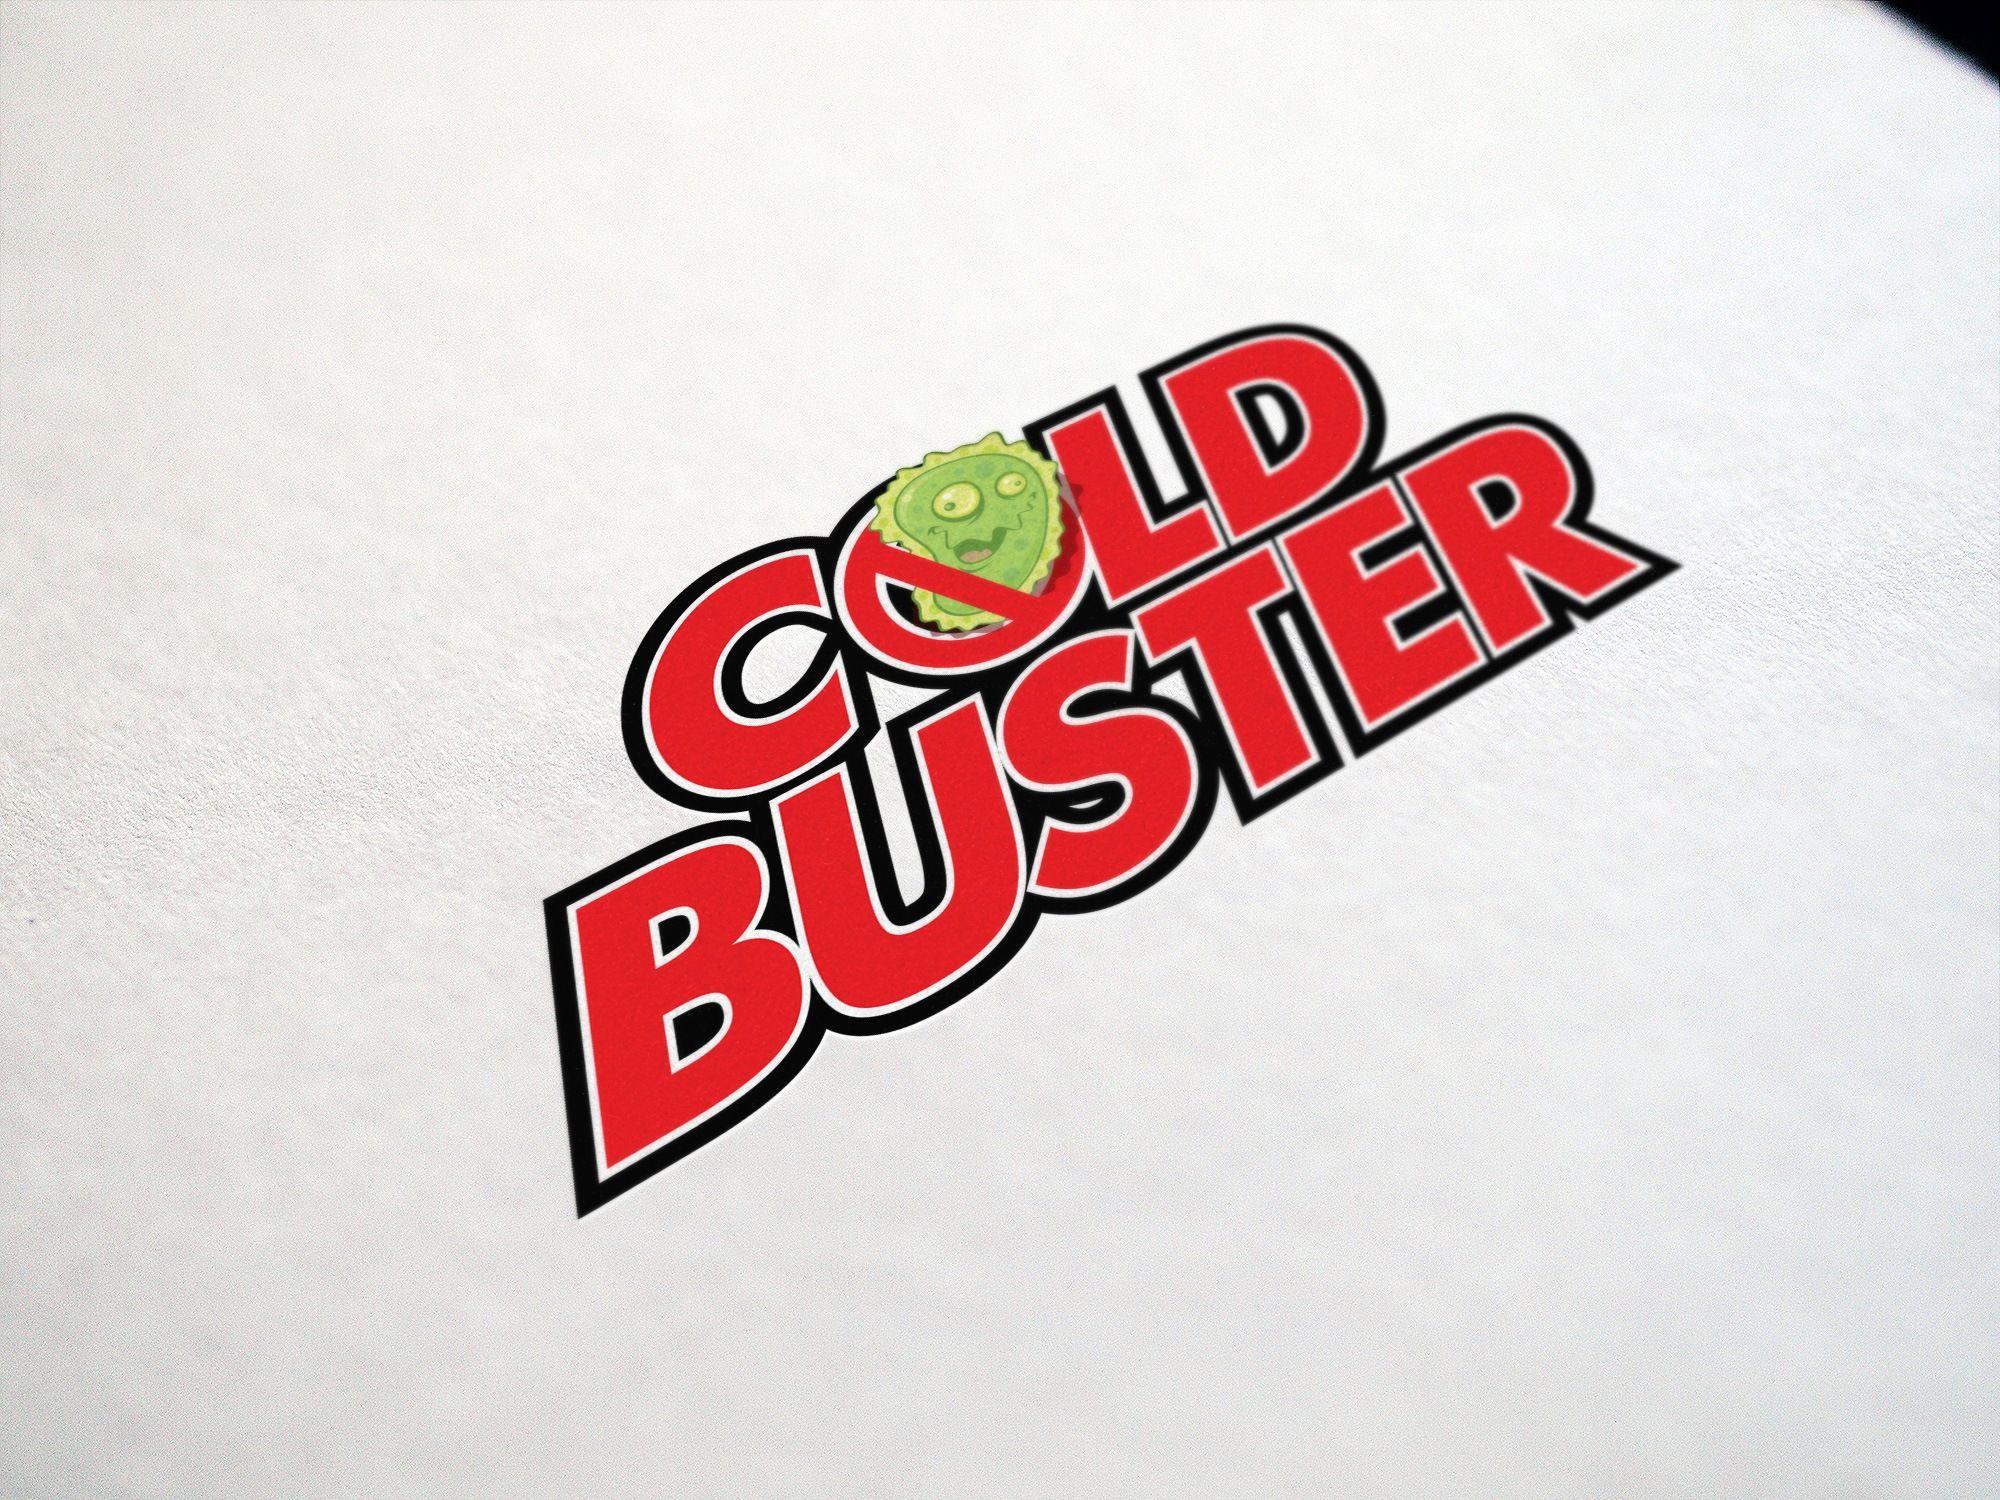 Buster Logo - Cold Buster Logo Design